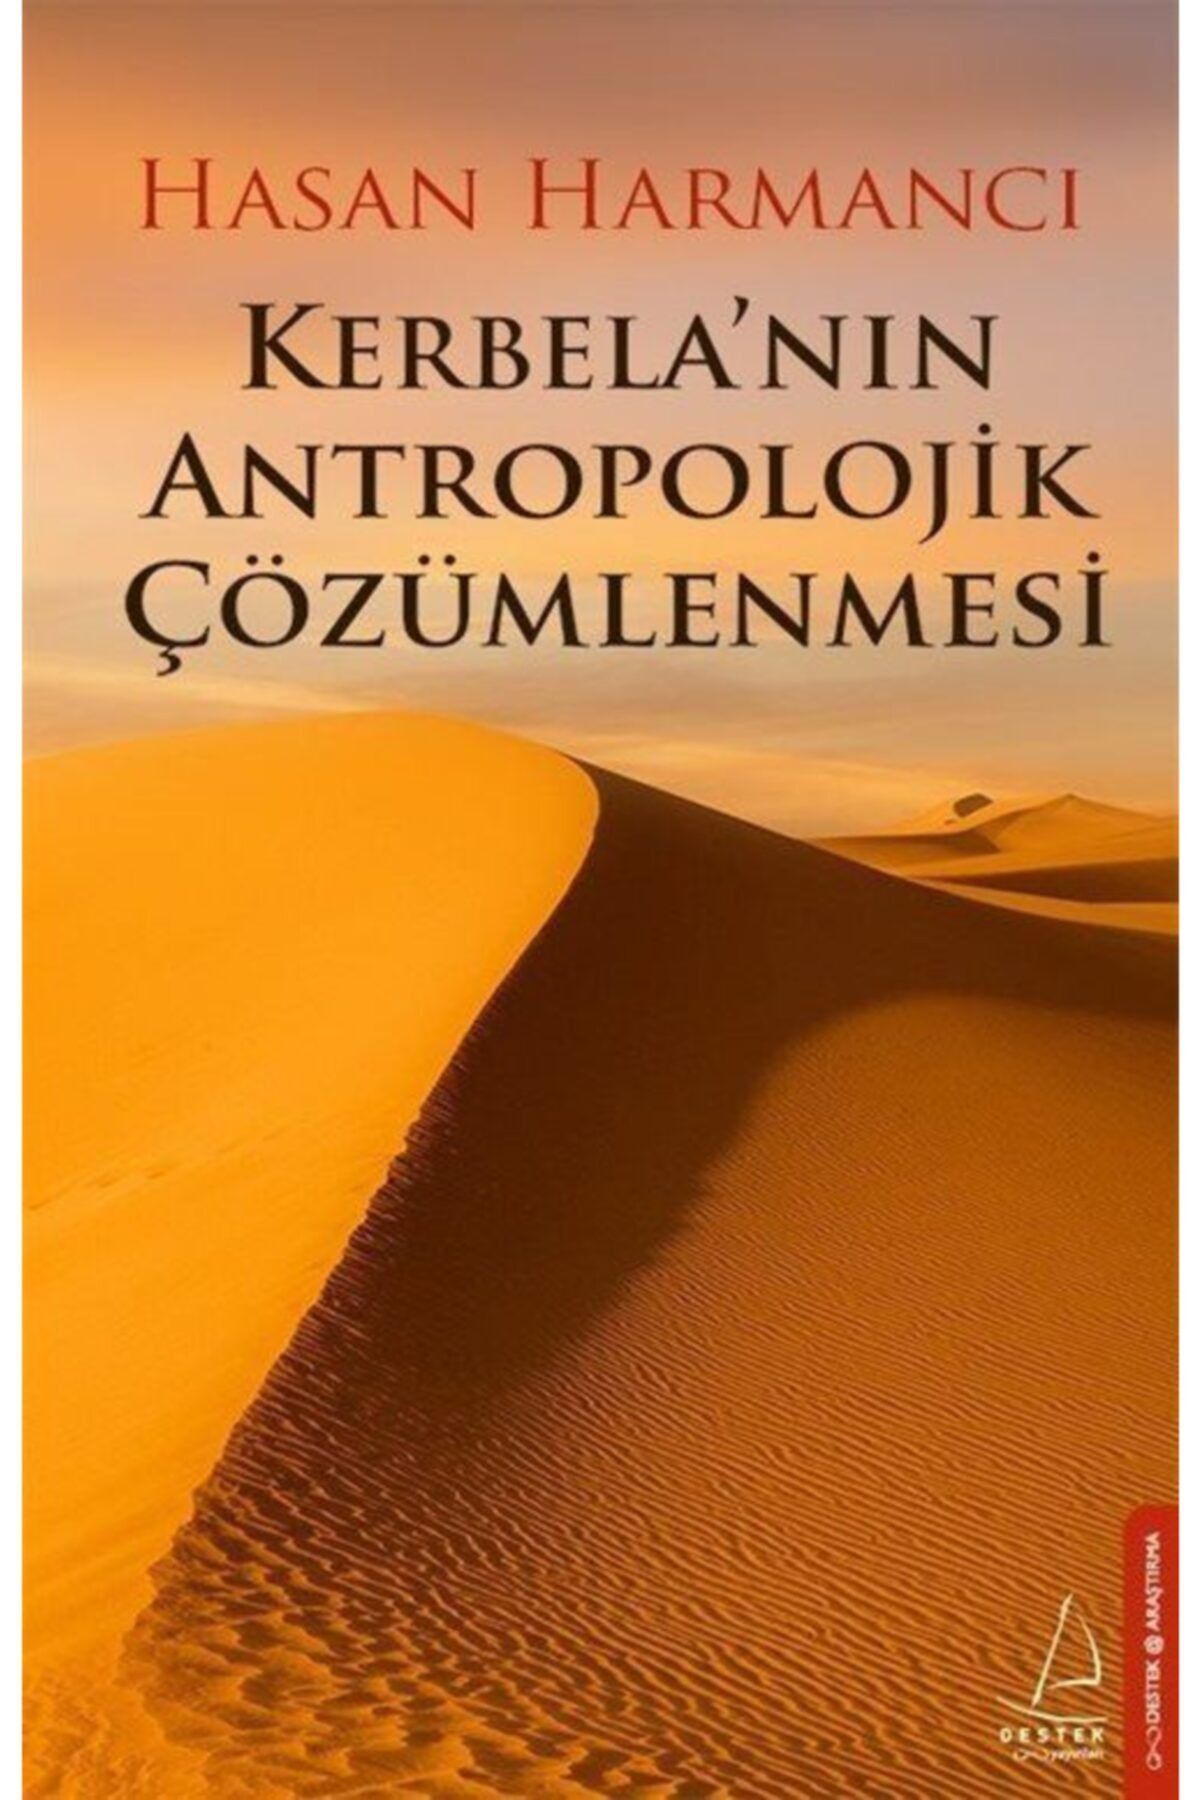 Destek Yayınları Kerbela'nın Antropolojik Çözümlenmesi